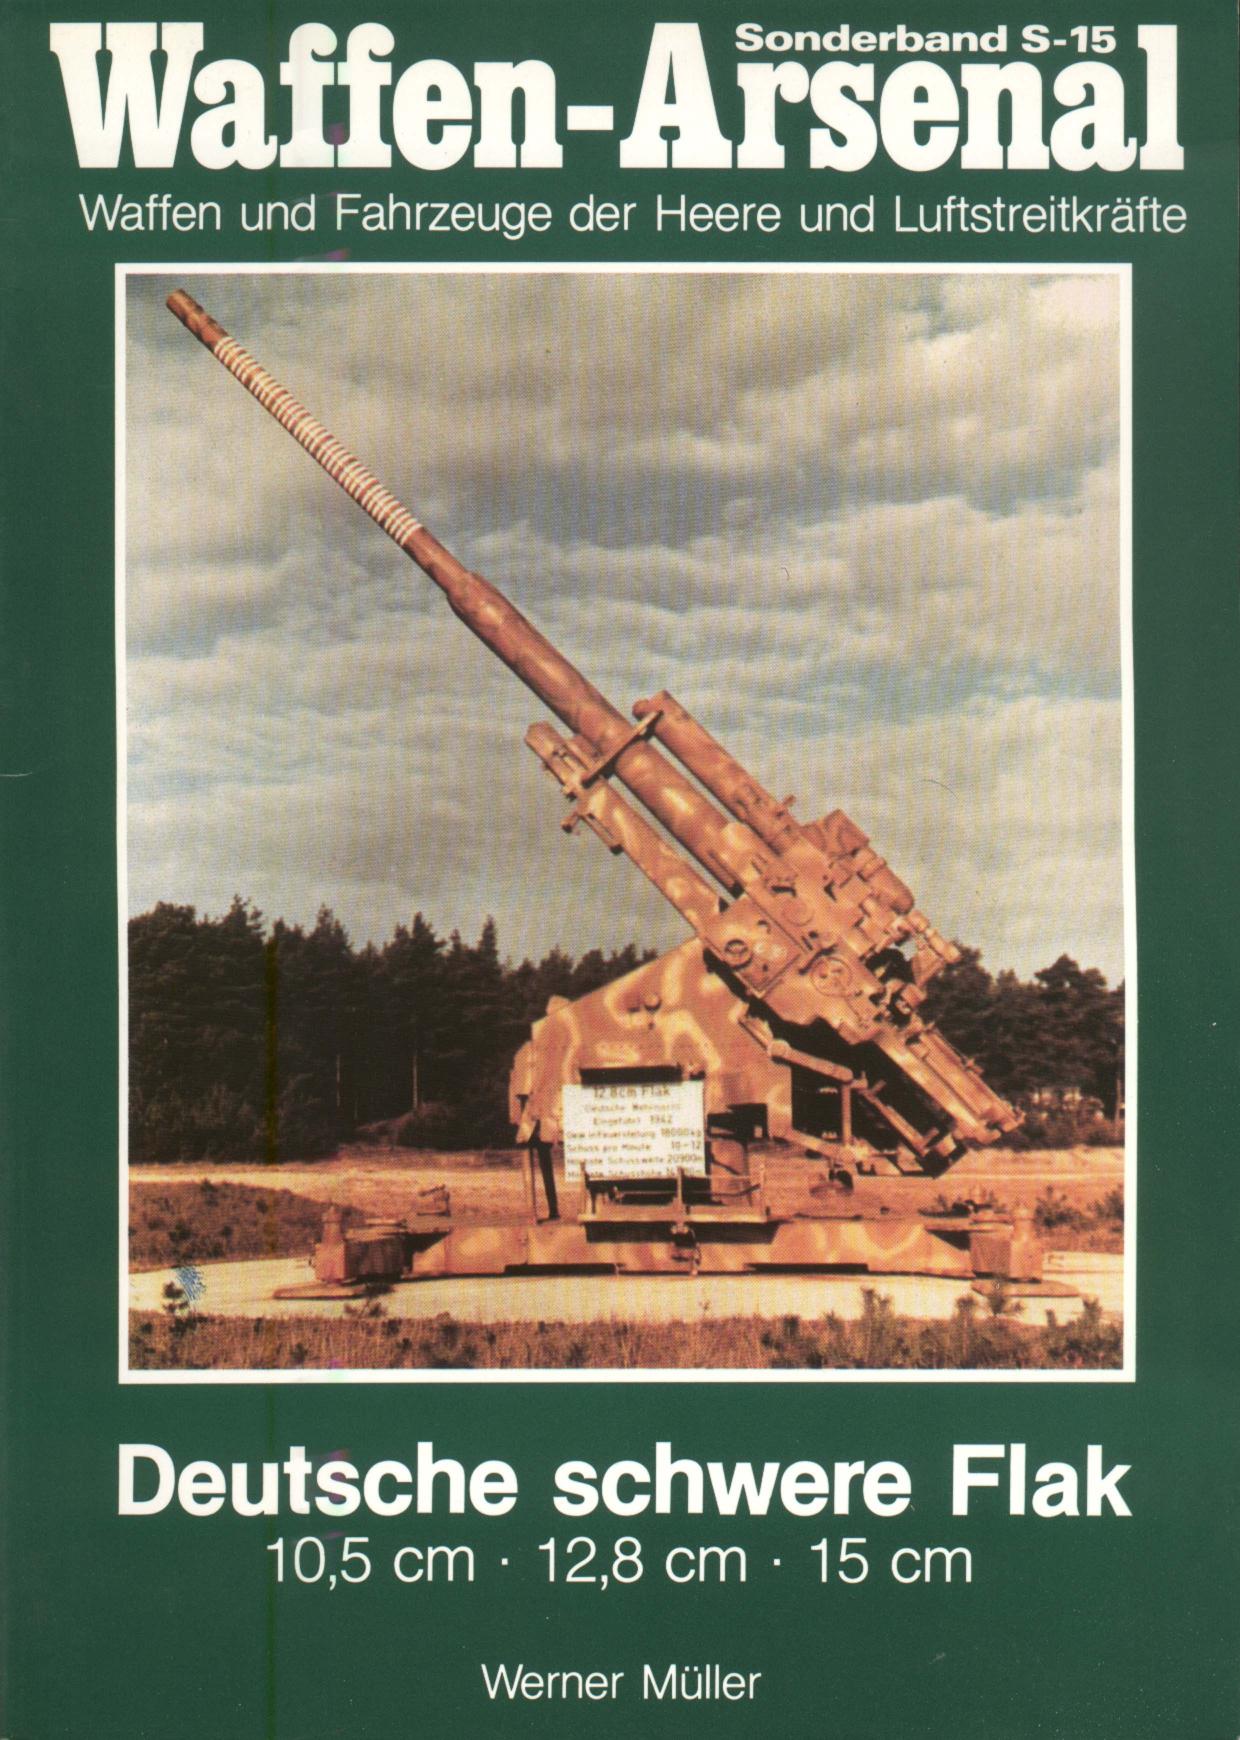 Deutsche schwere Flak 10.5 cm., 12.8 cm., 15 cm.